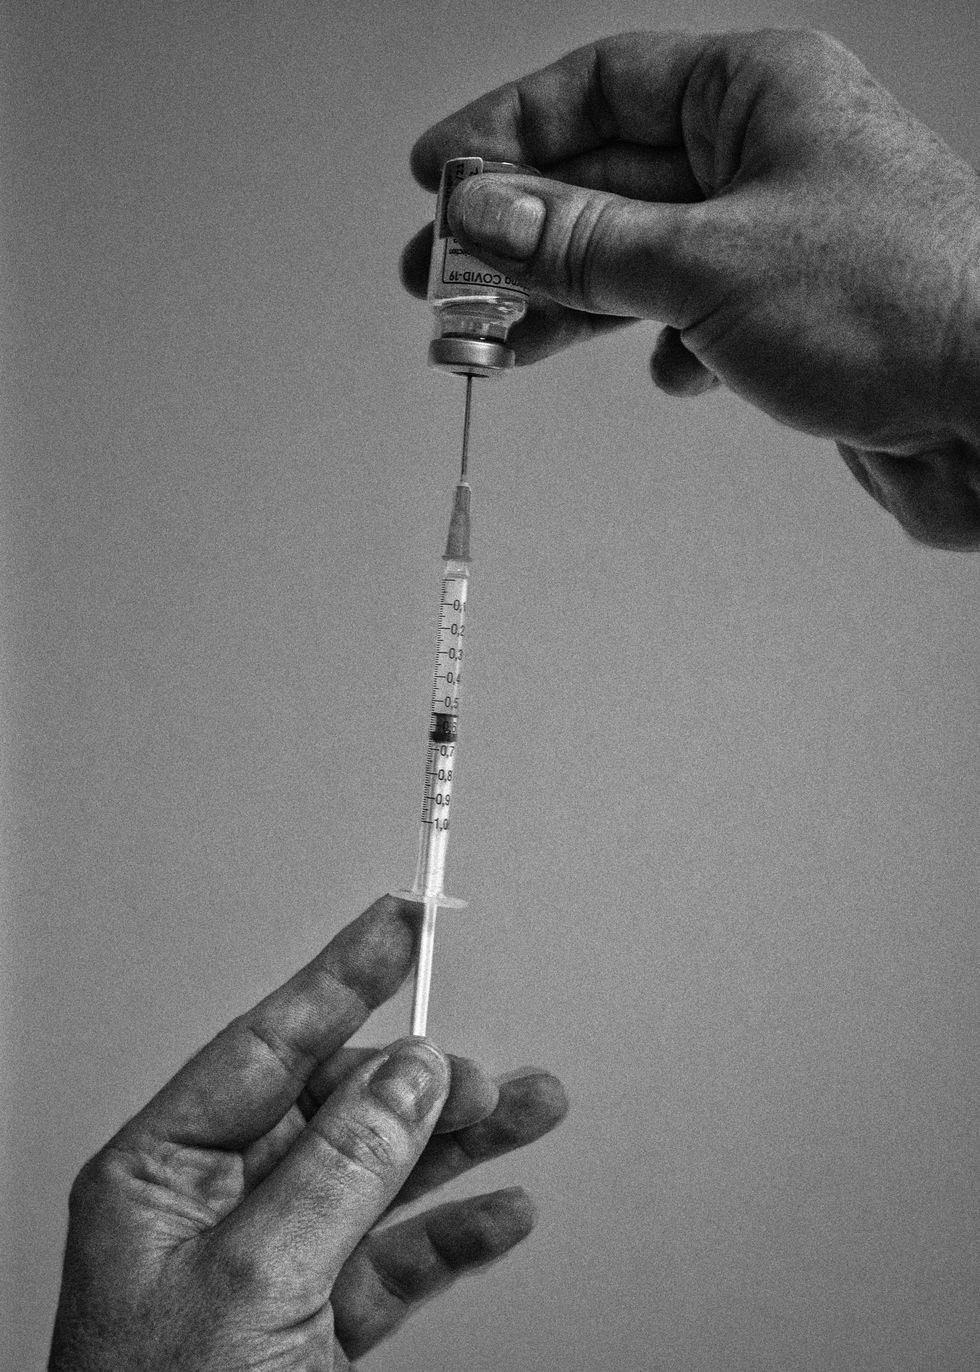 Op 8 januari 2021 wordt de eerste dosis van het nieuwe Modernavaccin in het Centre Hospitalier Universitaire Tivoli toegediend